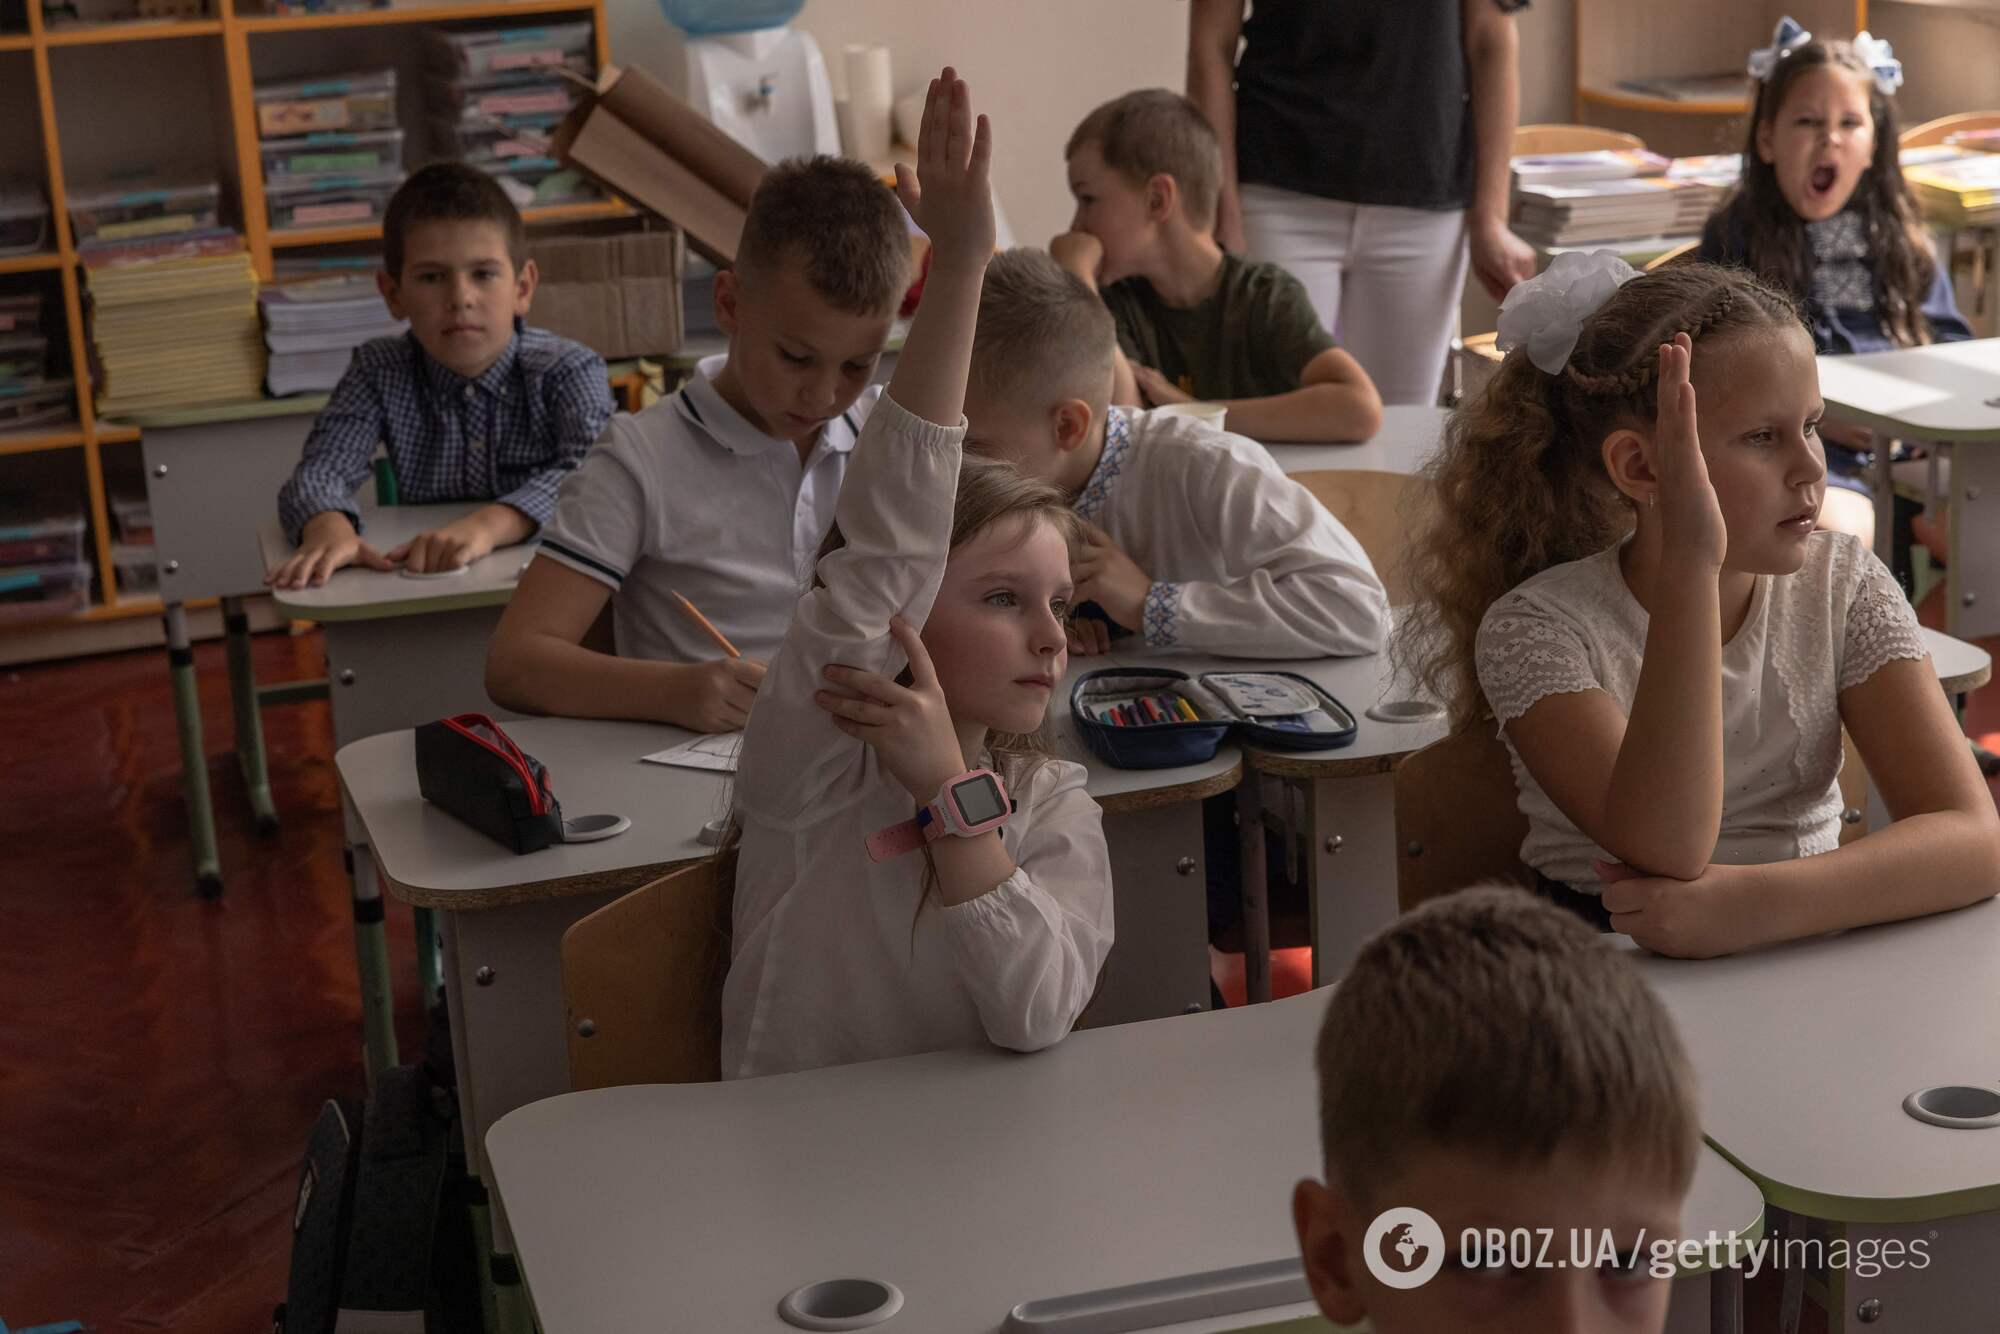 Уменьшение количества предметов в школе ведет к деградации детей, – Спиваковский